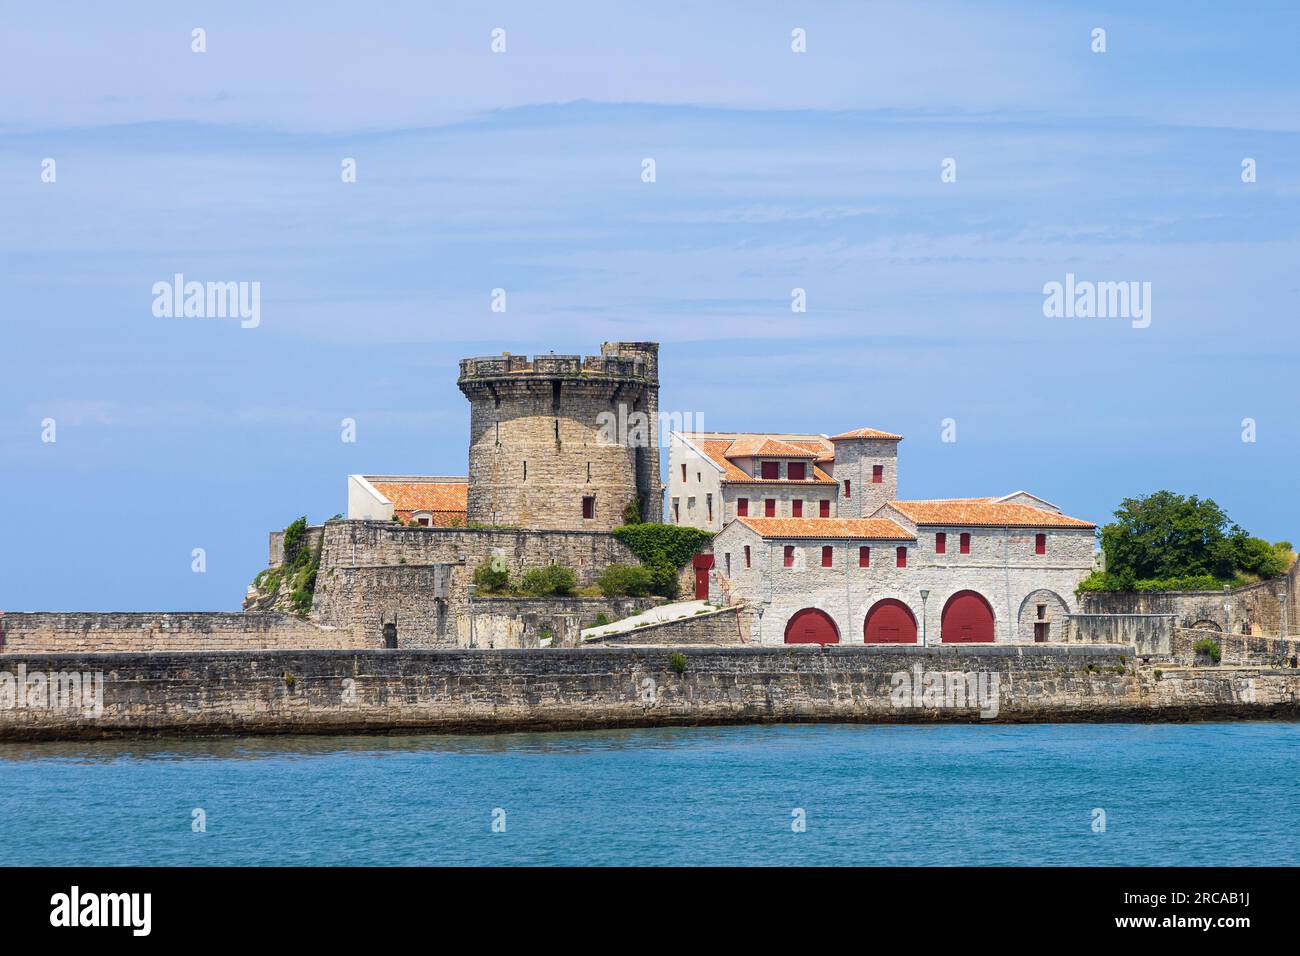 Fort de Socoa, storica fortezza costiera difensiva che protegge la baia di Saint-Jean-de-Luz e il porto, con una torre circolare. Ciboure, Francia Foto Stock